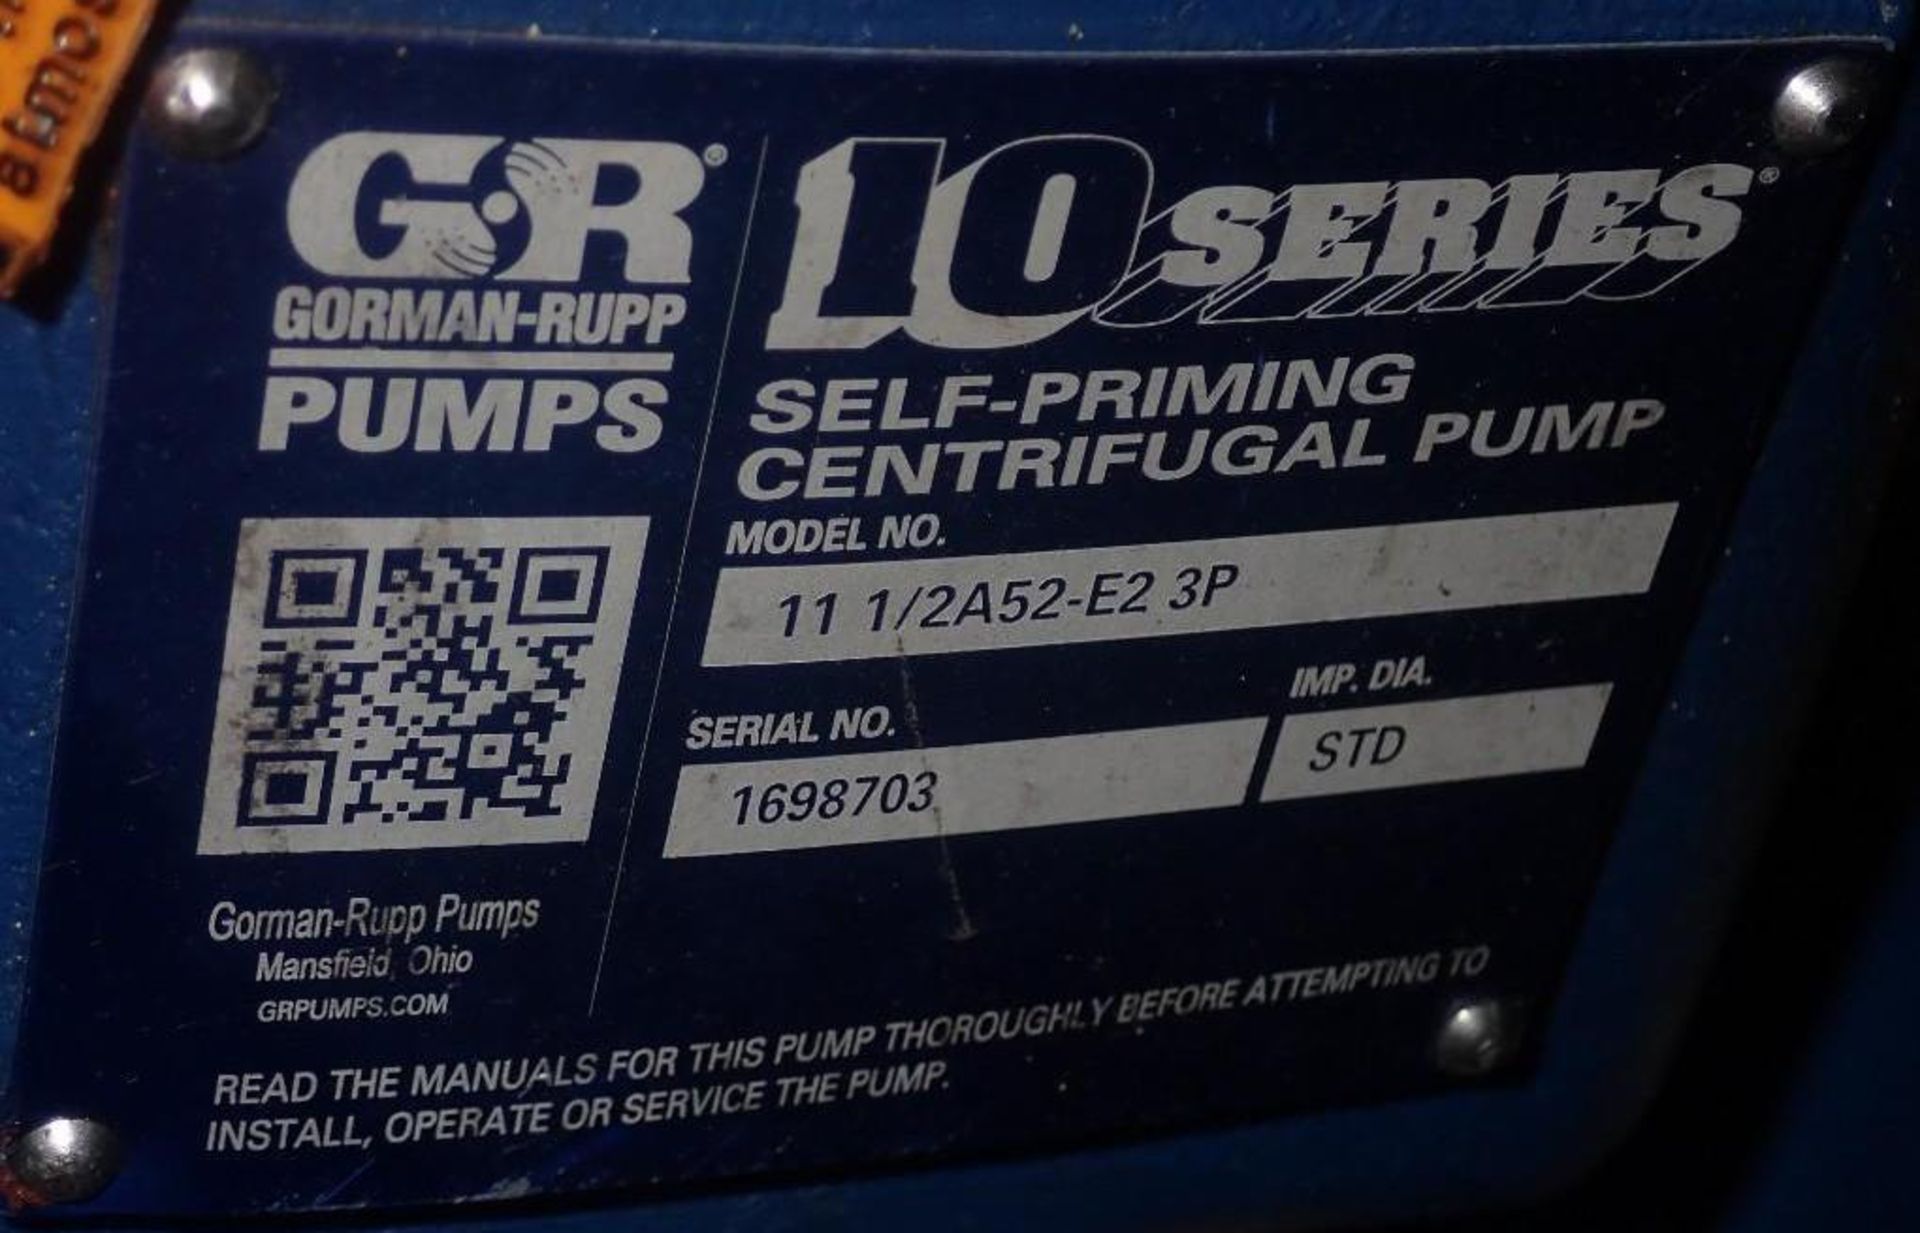 Gorman-Rupp # 11 1/2A52-E2 3P Centrifugal Pump - Image 3 of 4